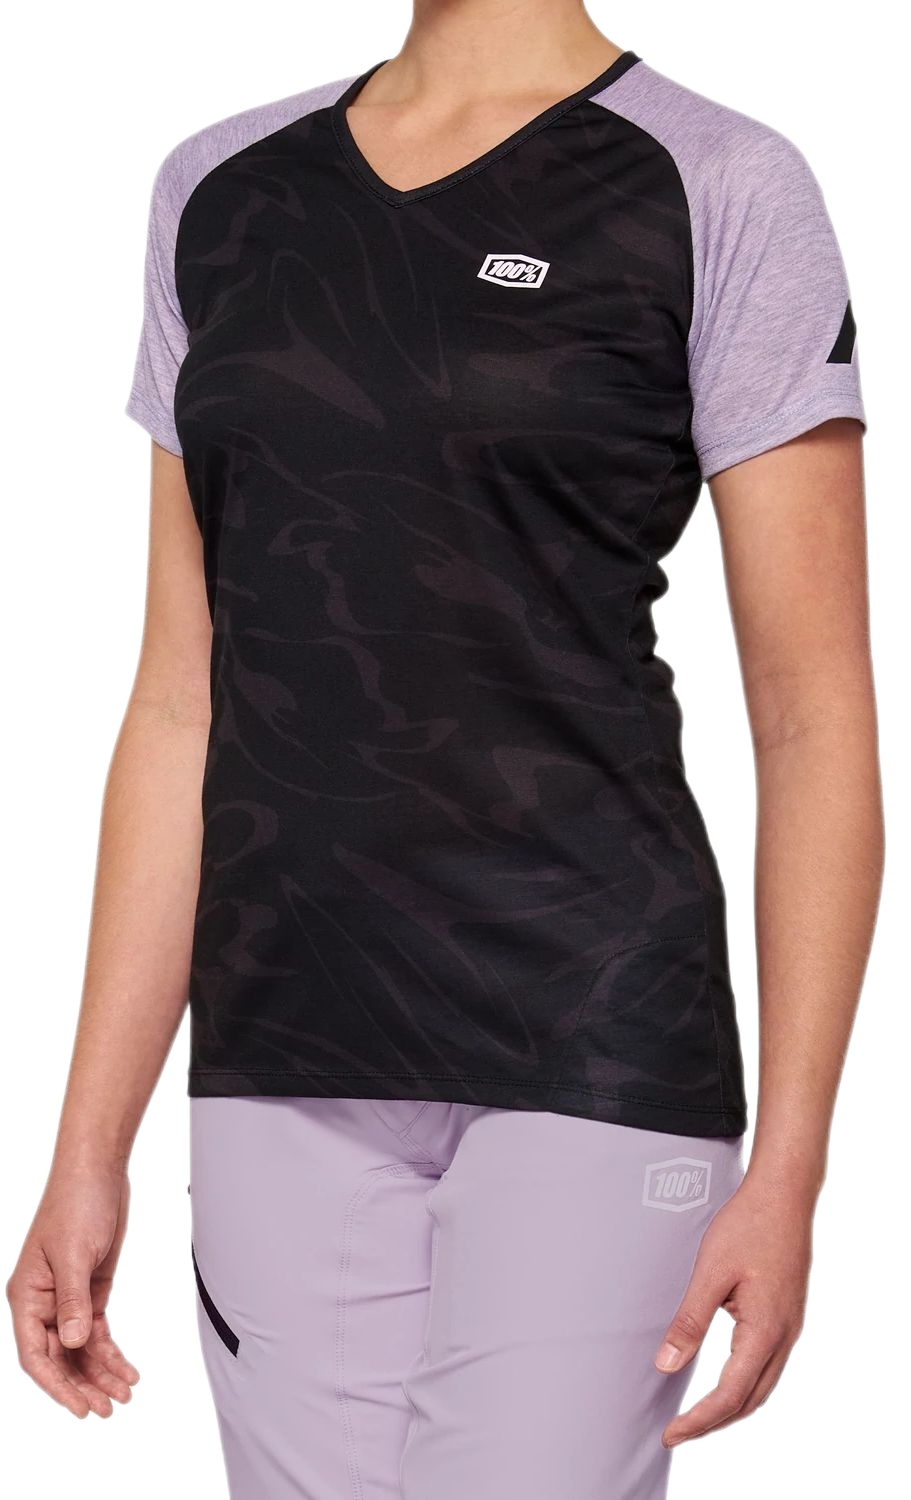 E-shop 100% Airmatic Women'S Short Sleeve Jersey Black/Lavender M